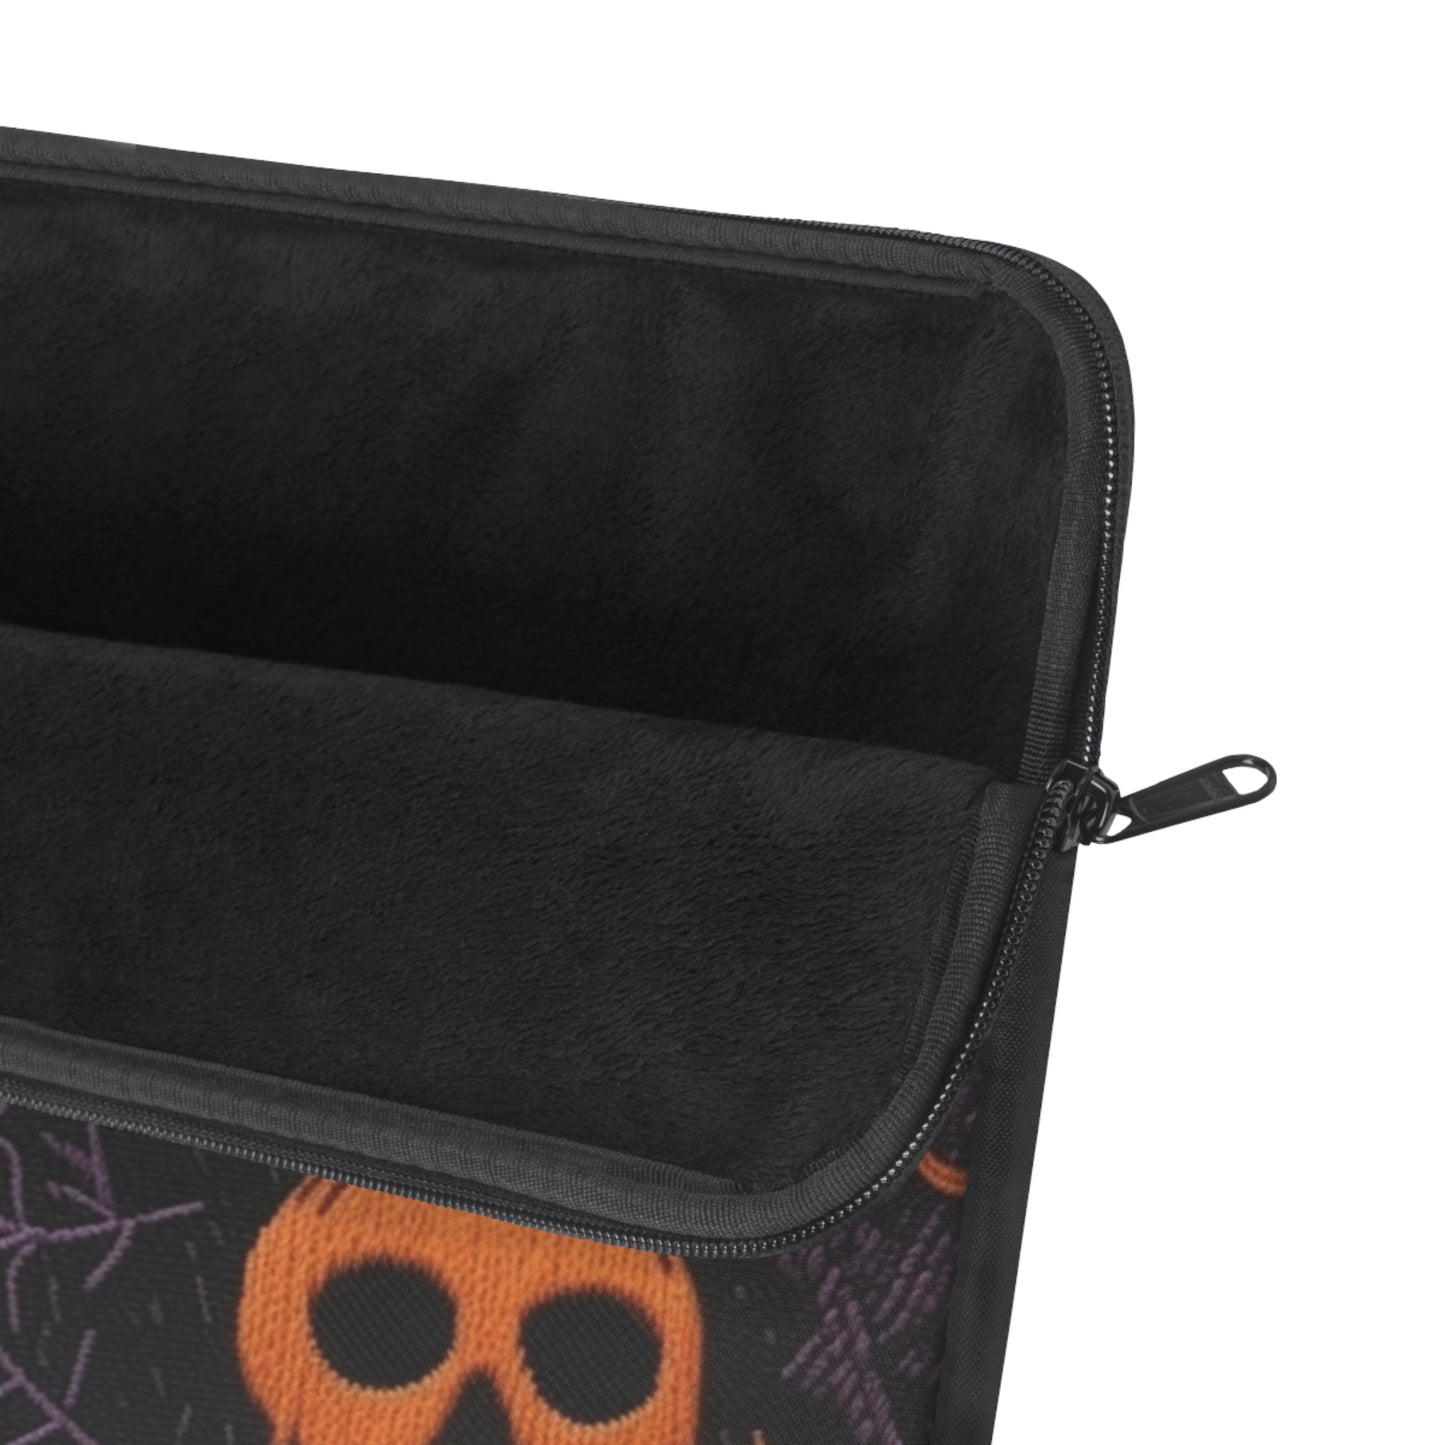 Embroidered Skull Black Purple Laptop Sleeve